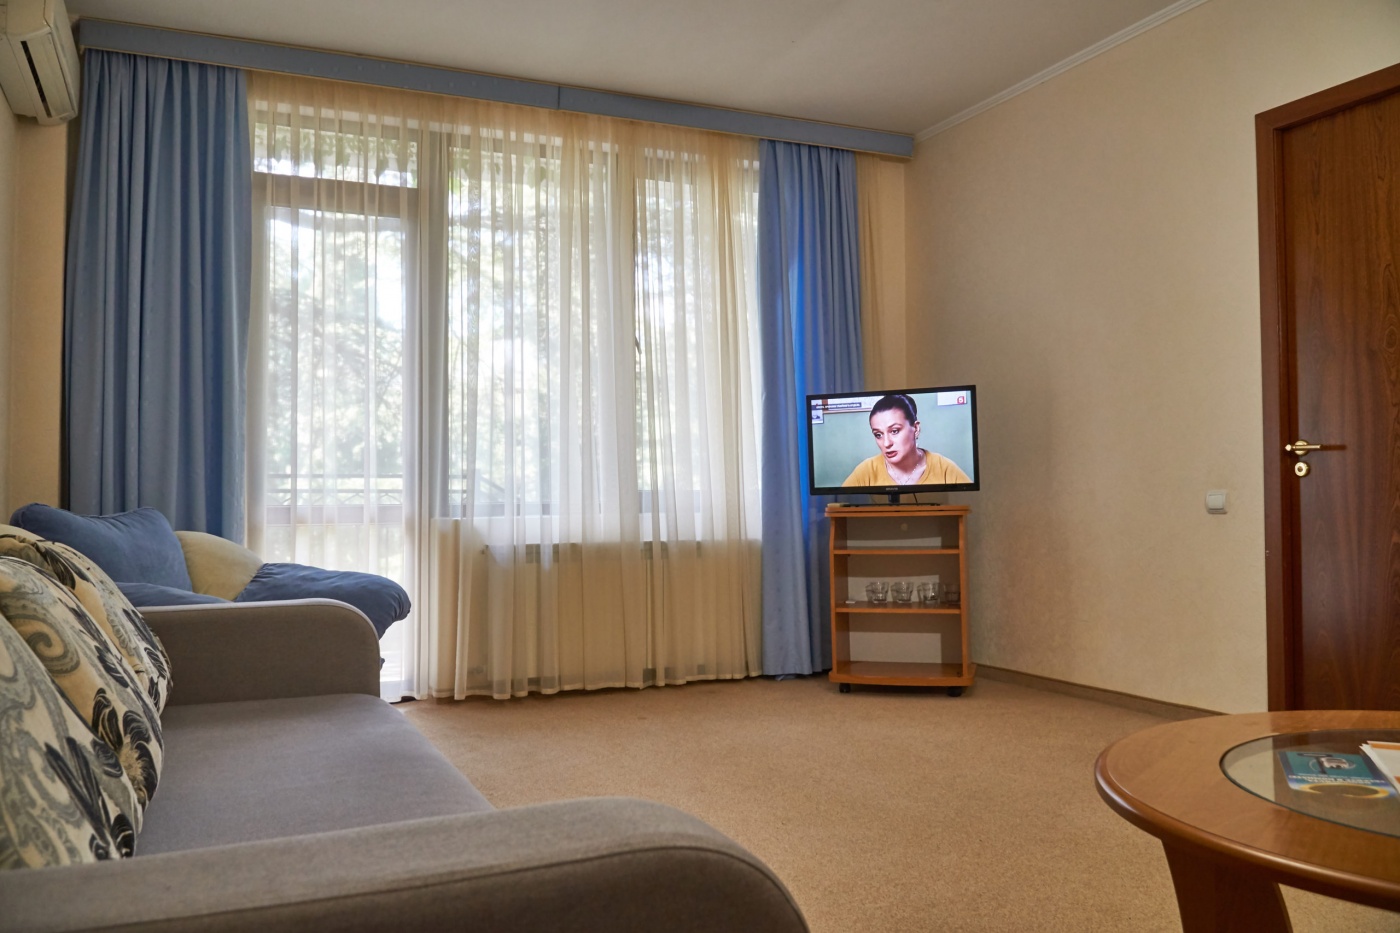  Отель «Сказка» Республика Крым Апартаменты класса Люкс 2-комнатный, фото 6